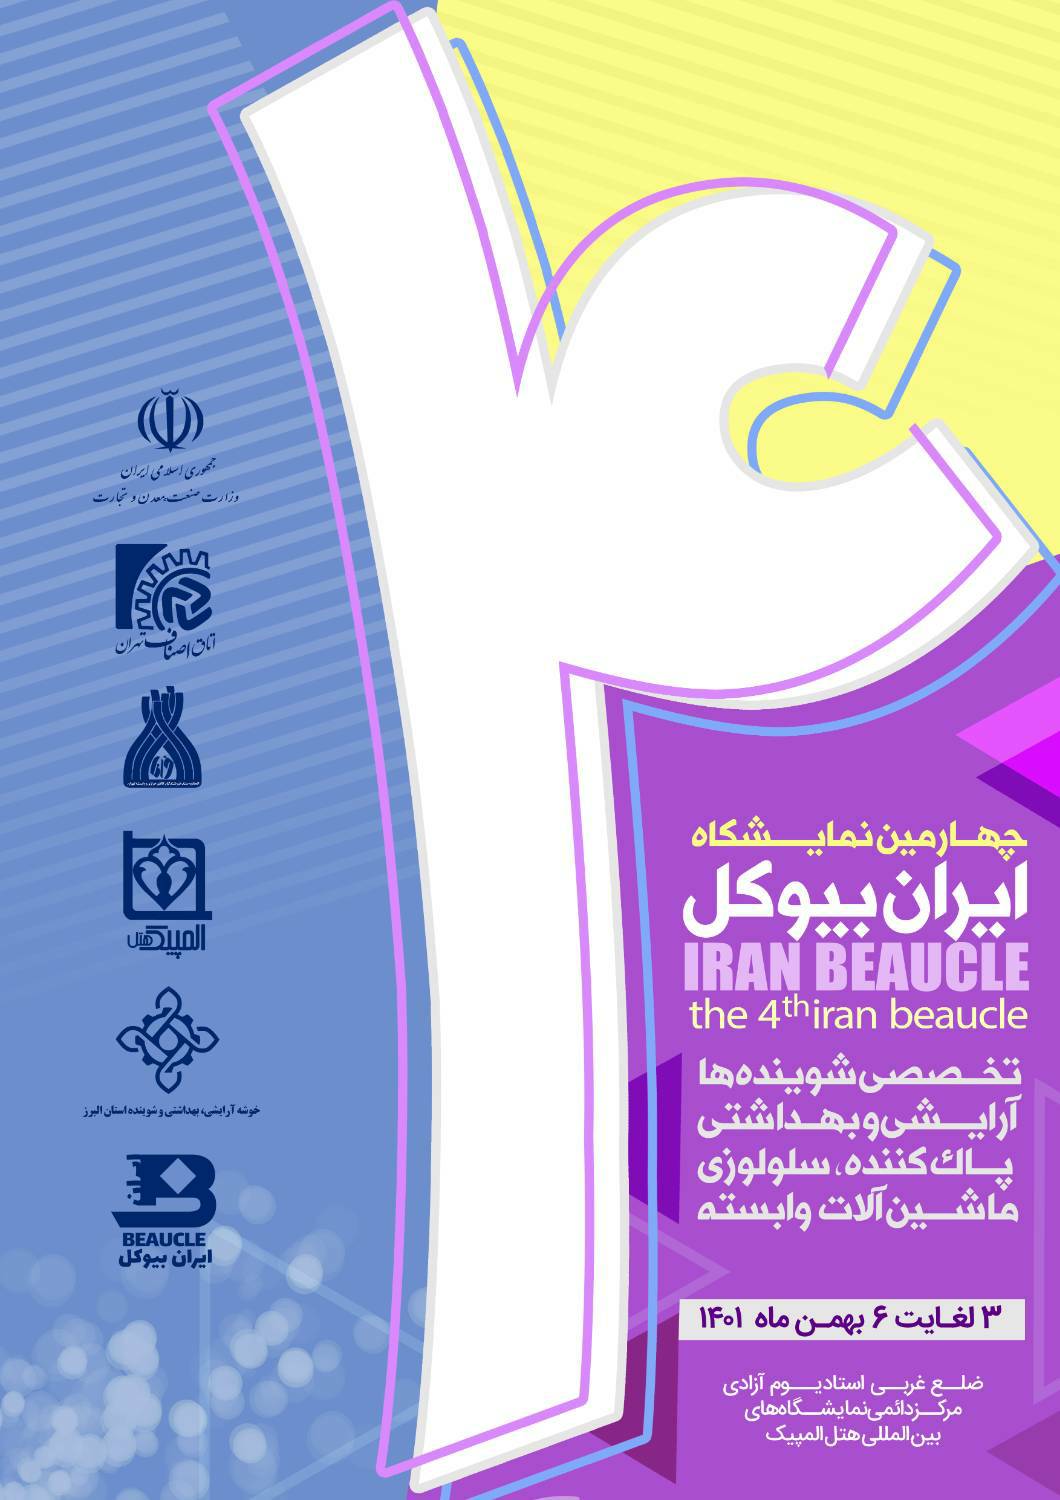 نمایشگاه ایران بیوکل